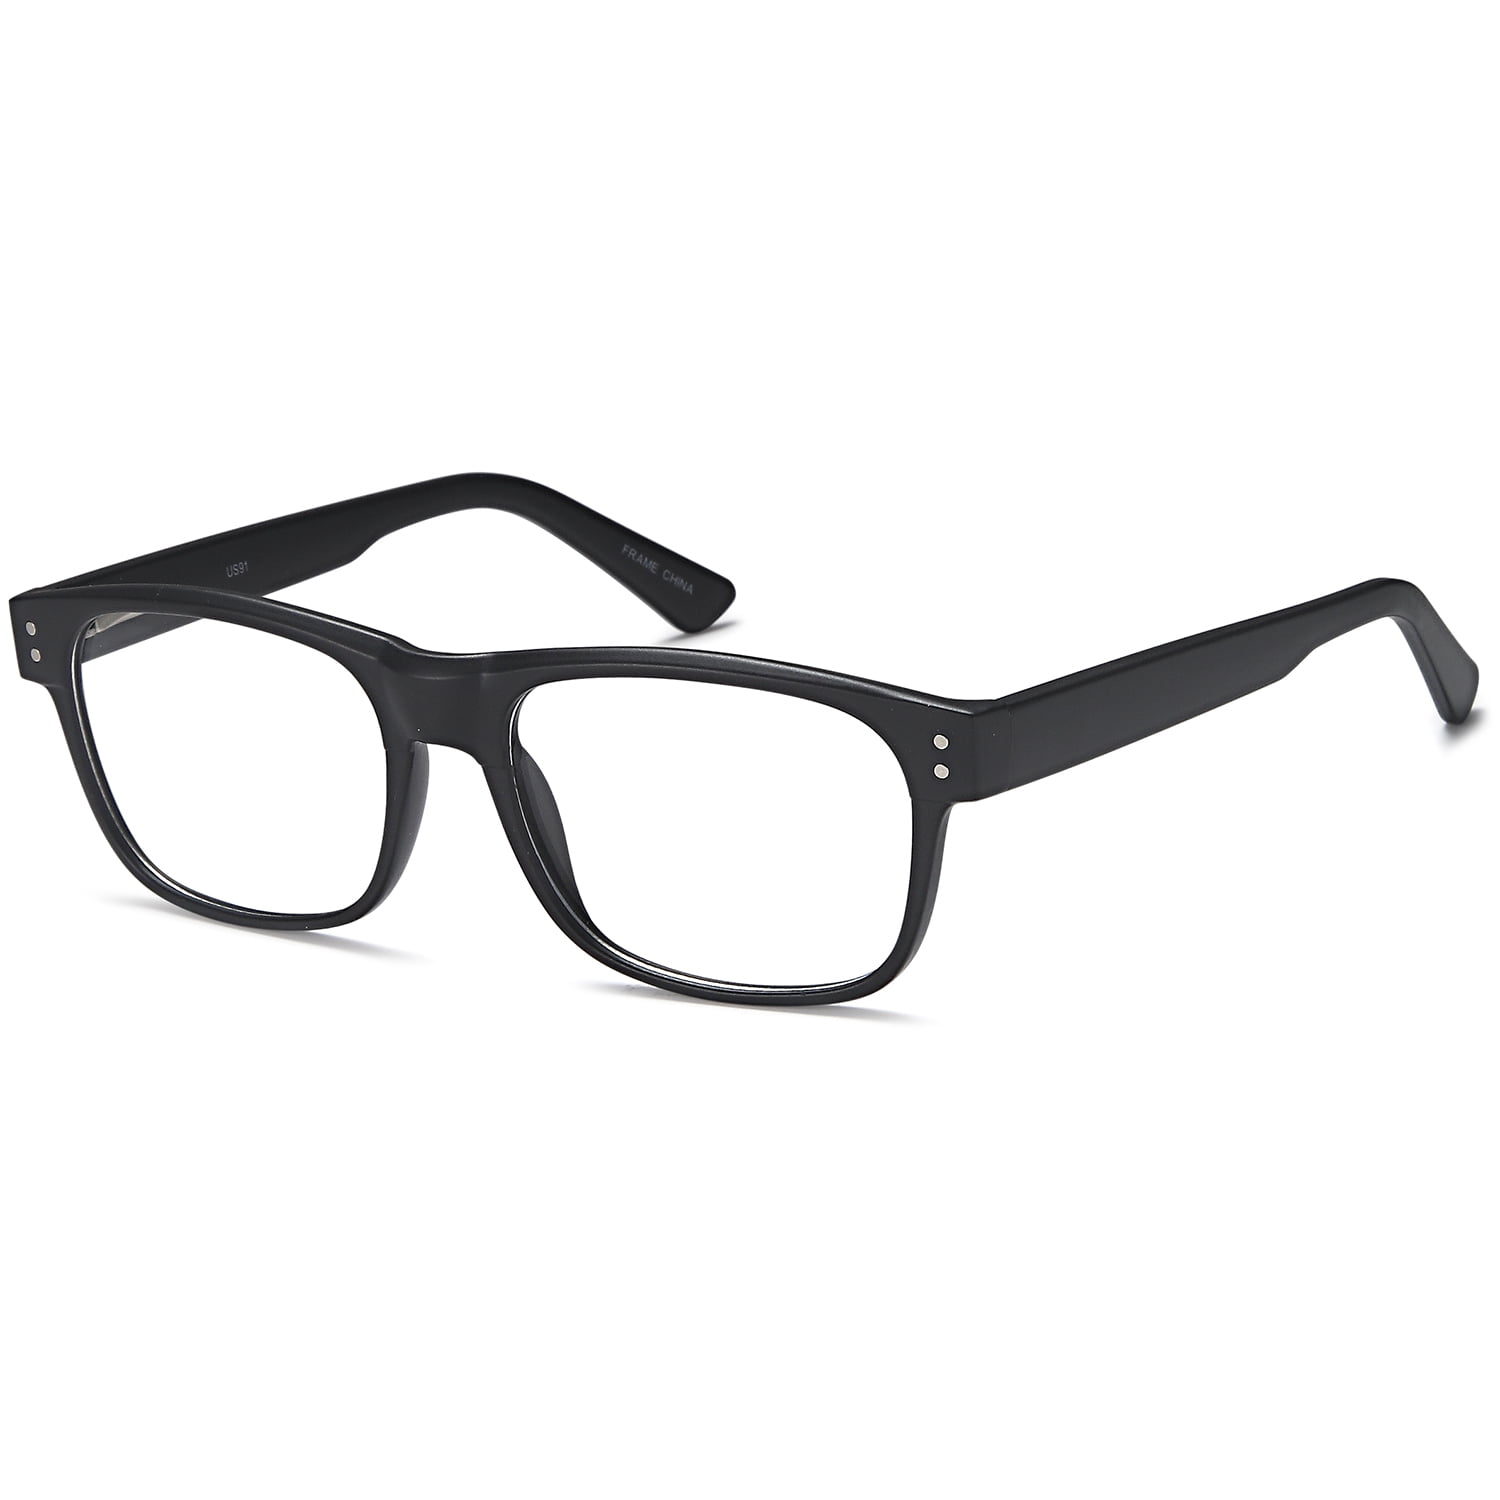 Men S Eyeglasses 57 19 155 Black Plastic